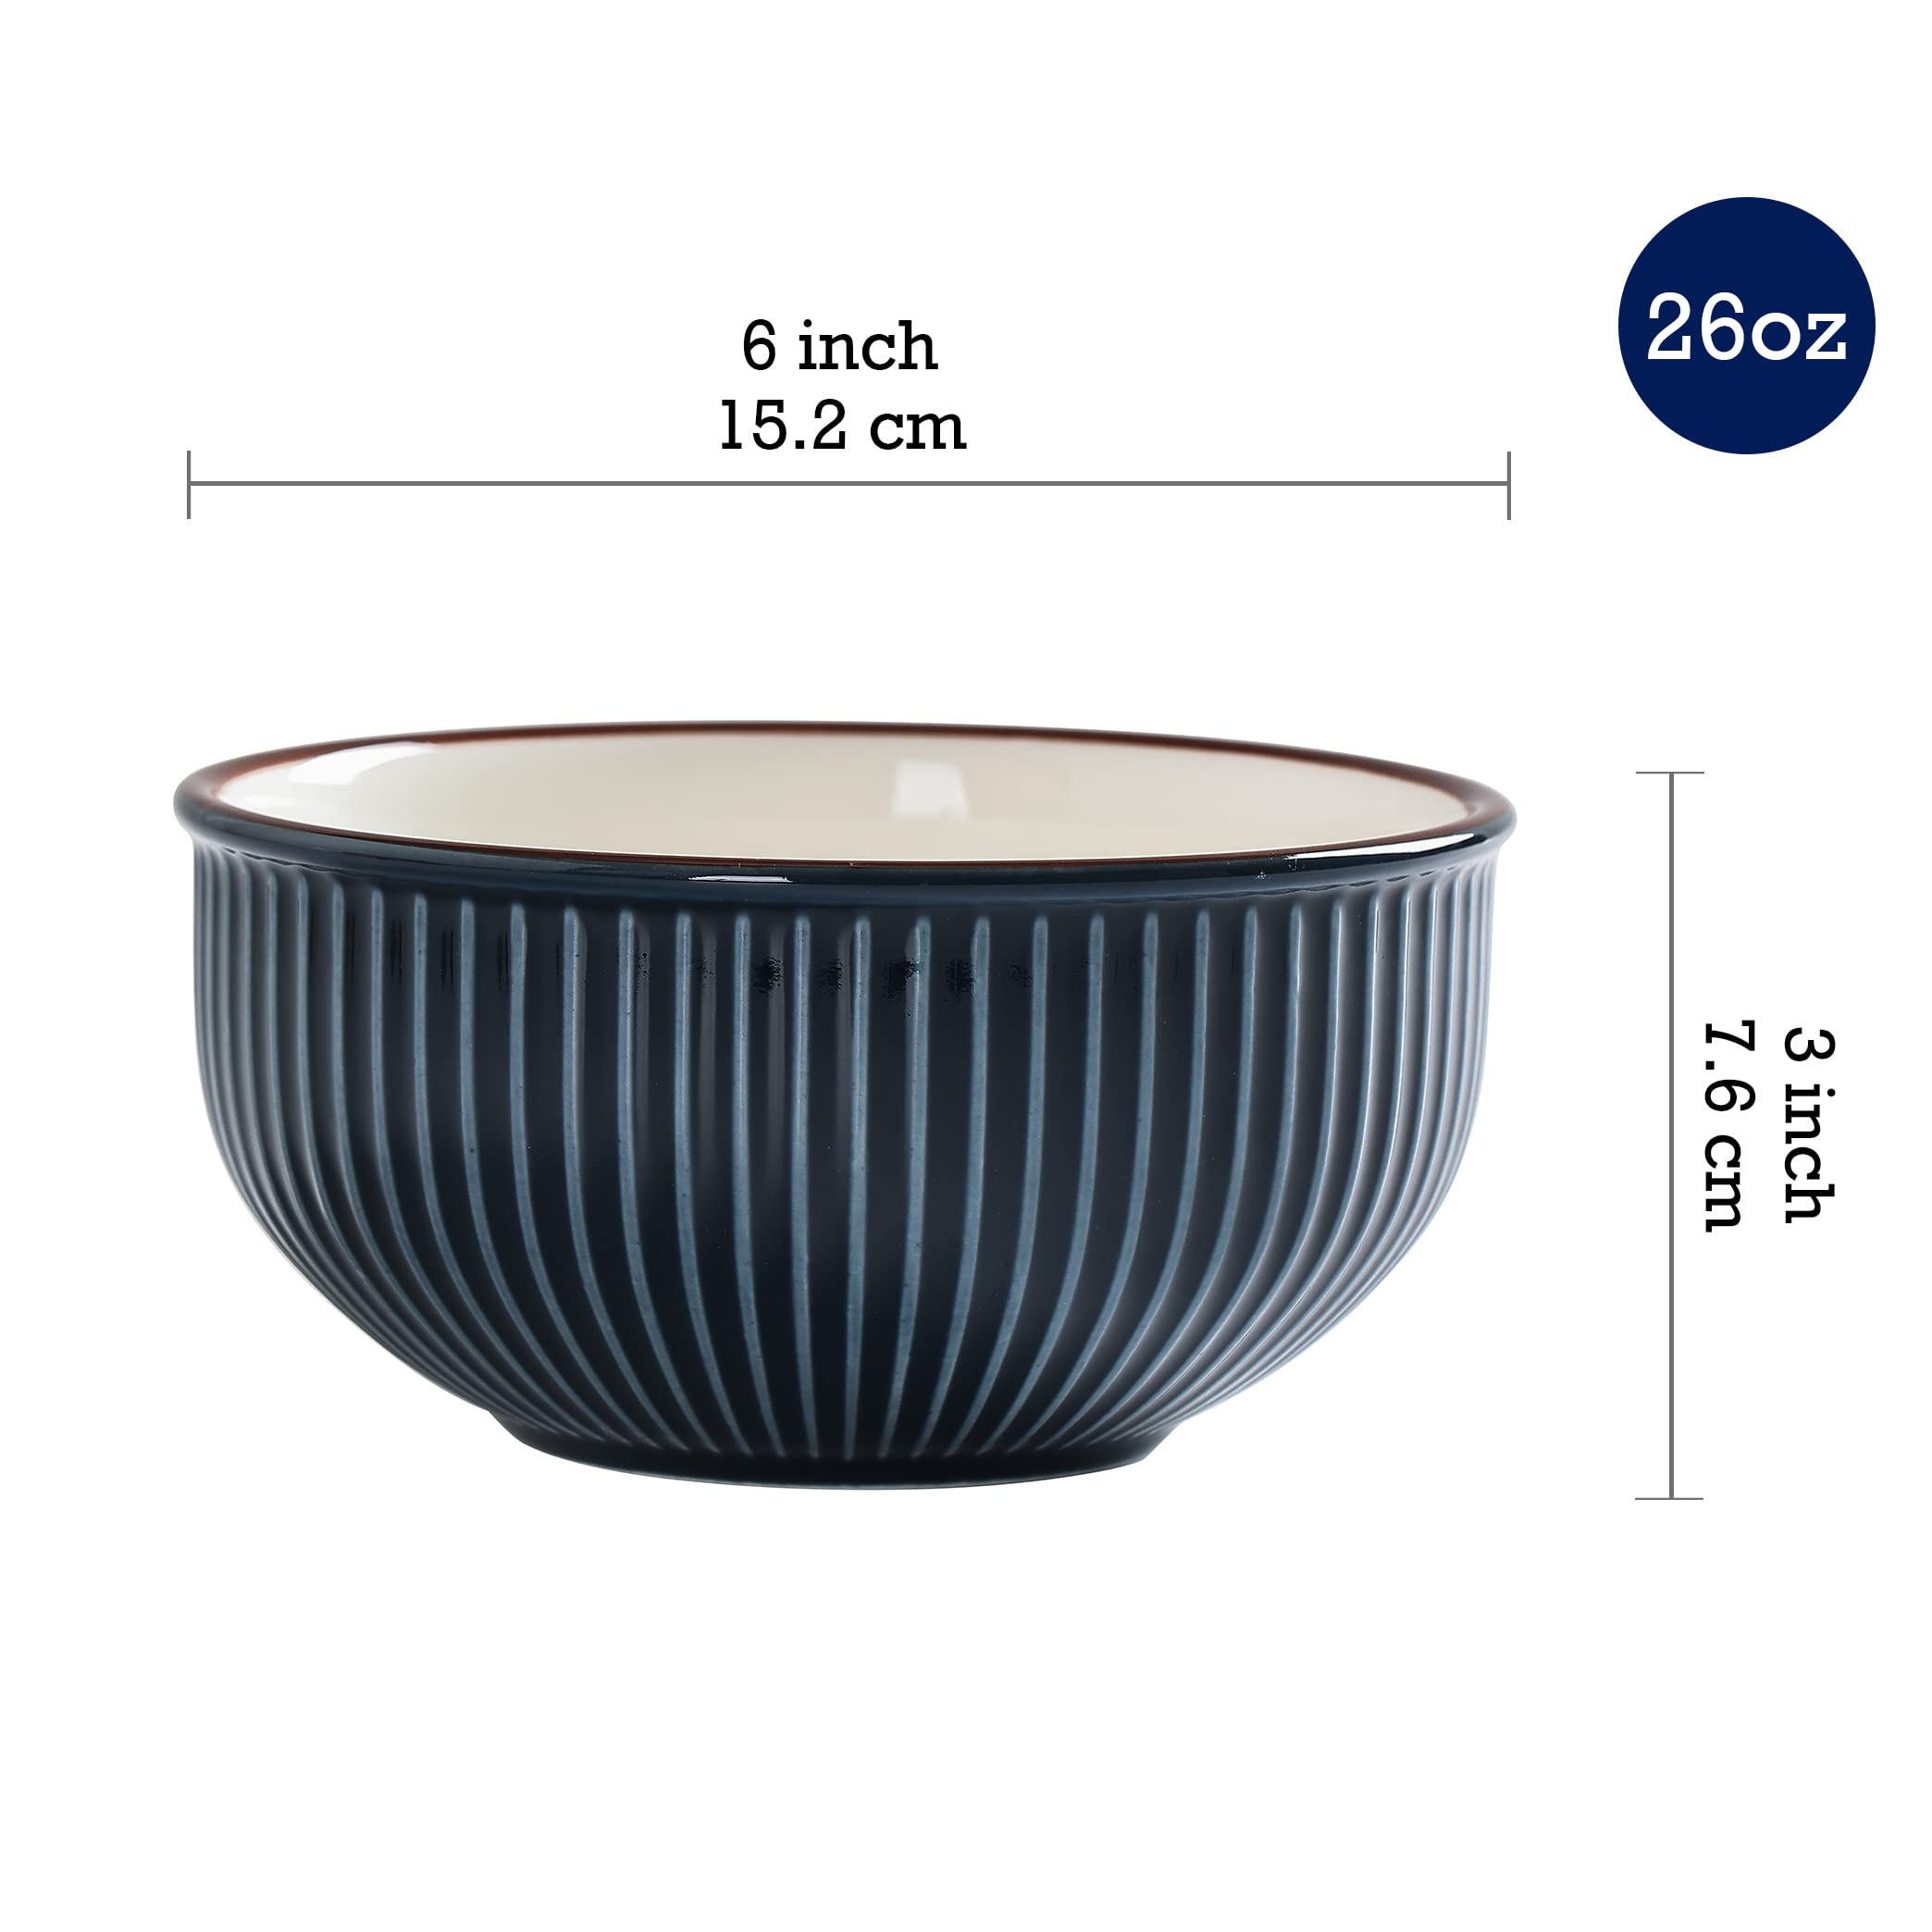 Bico Helios Blue 26oz Cereal Bowls, Set of 4, for Pasta, Salad, Cereal, Soup & Microwave & Dishwasher Safe